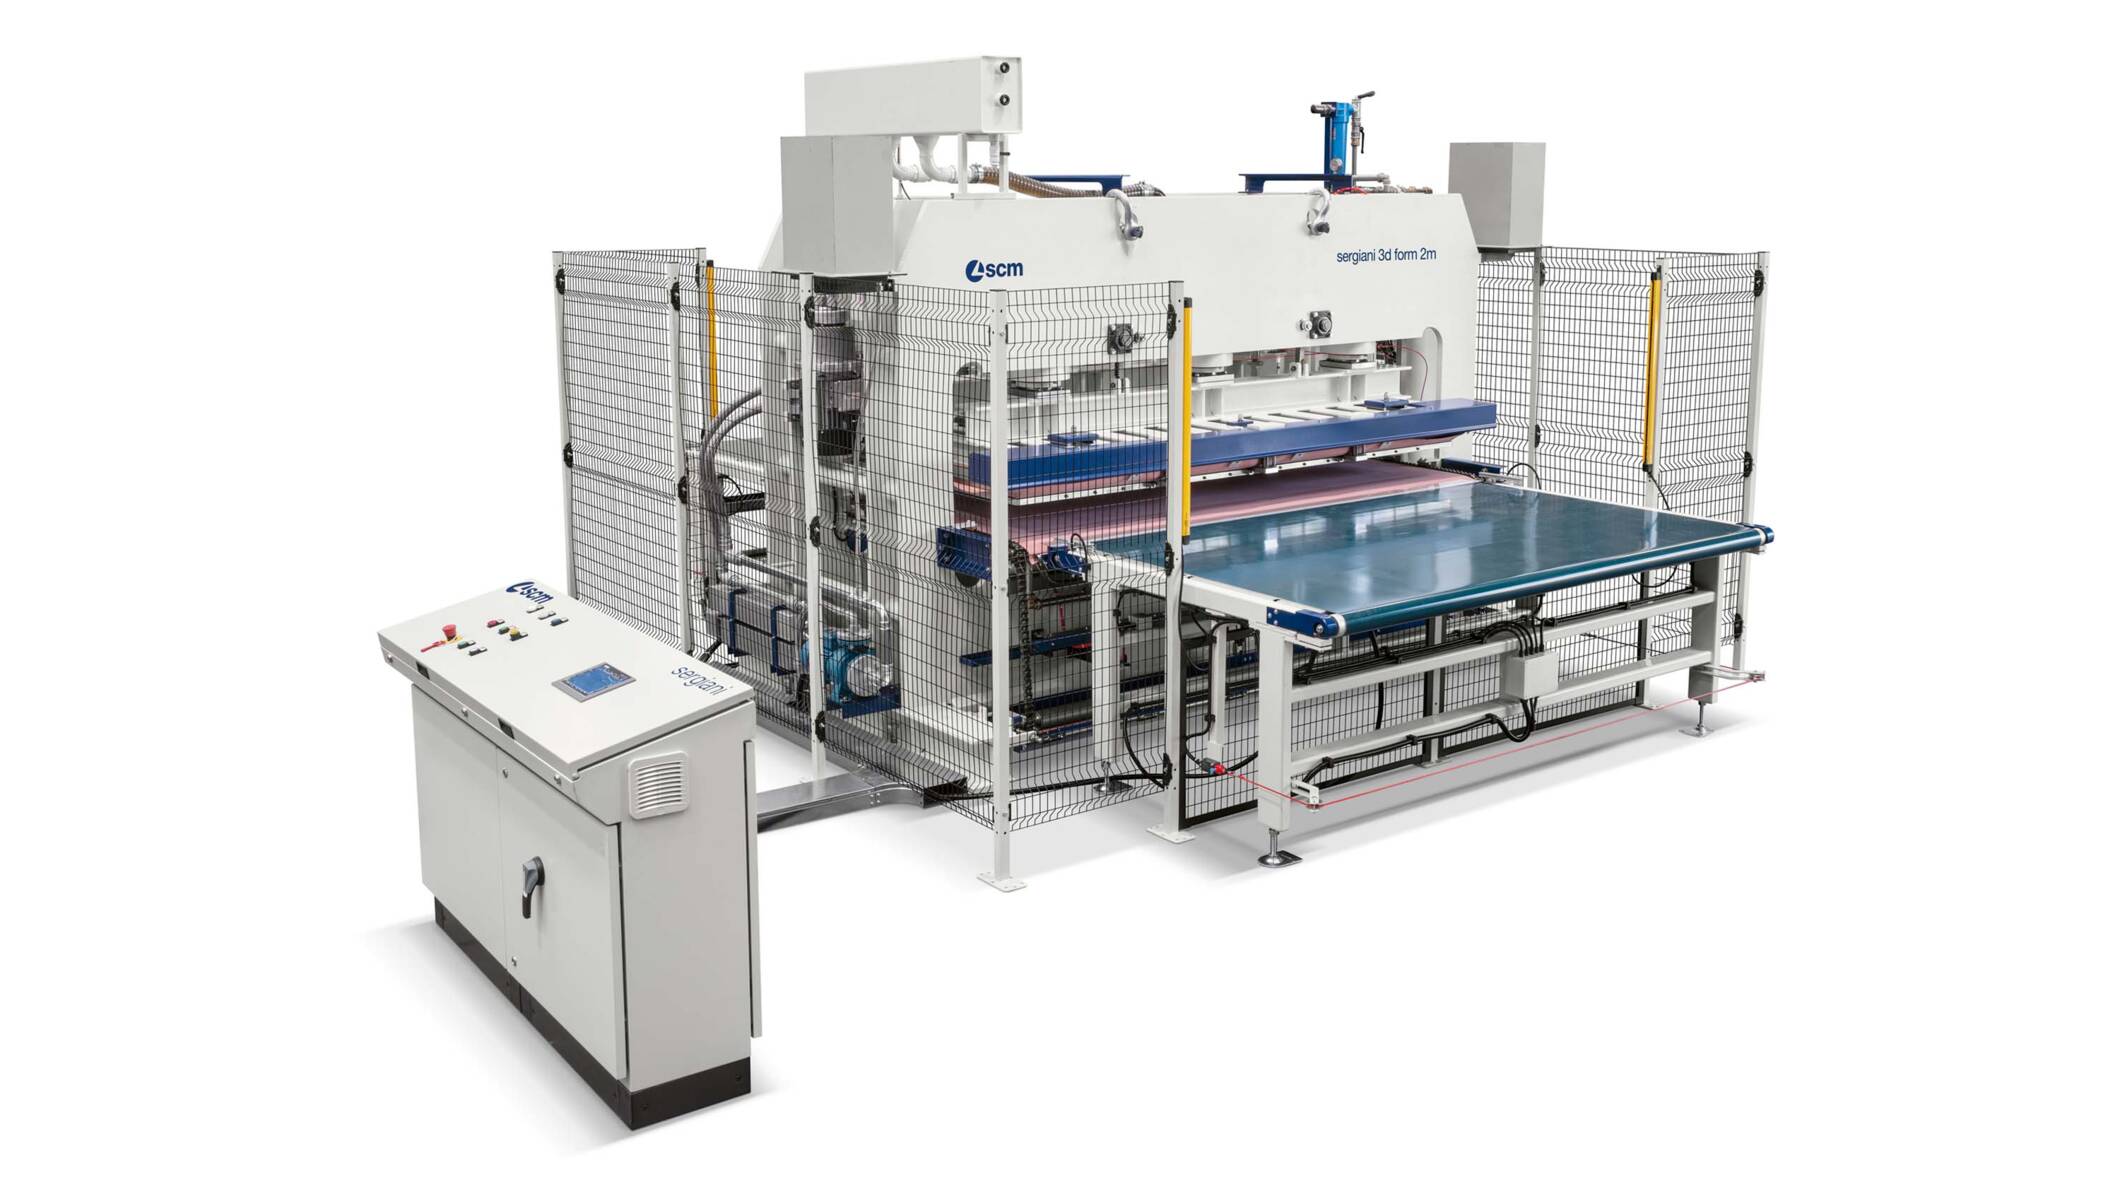 Presses - 3D panels laminating presses - sergiani 3d form 2m